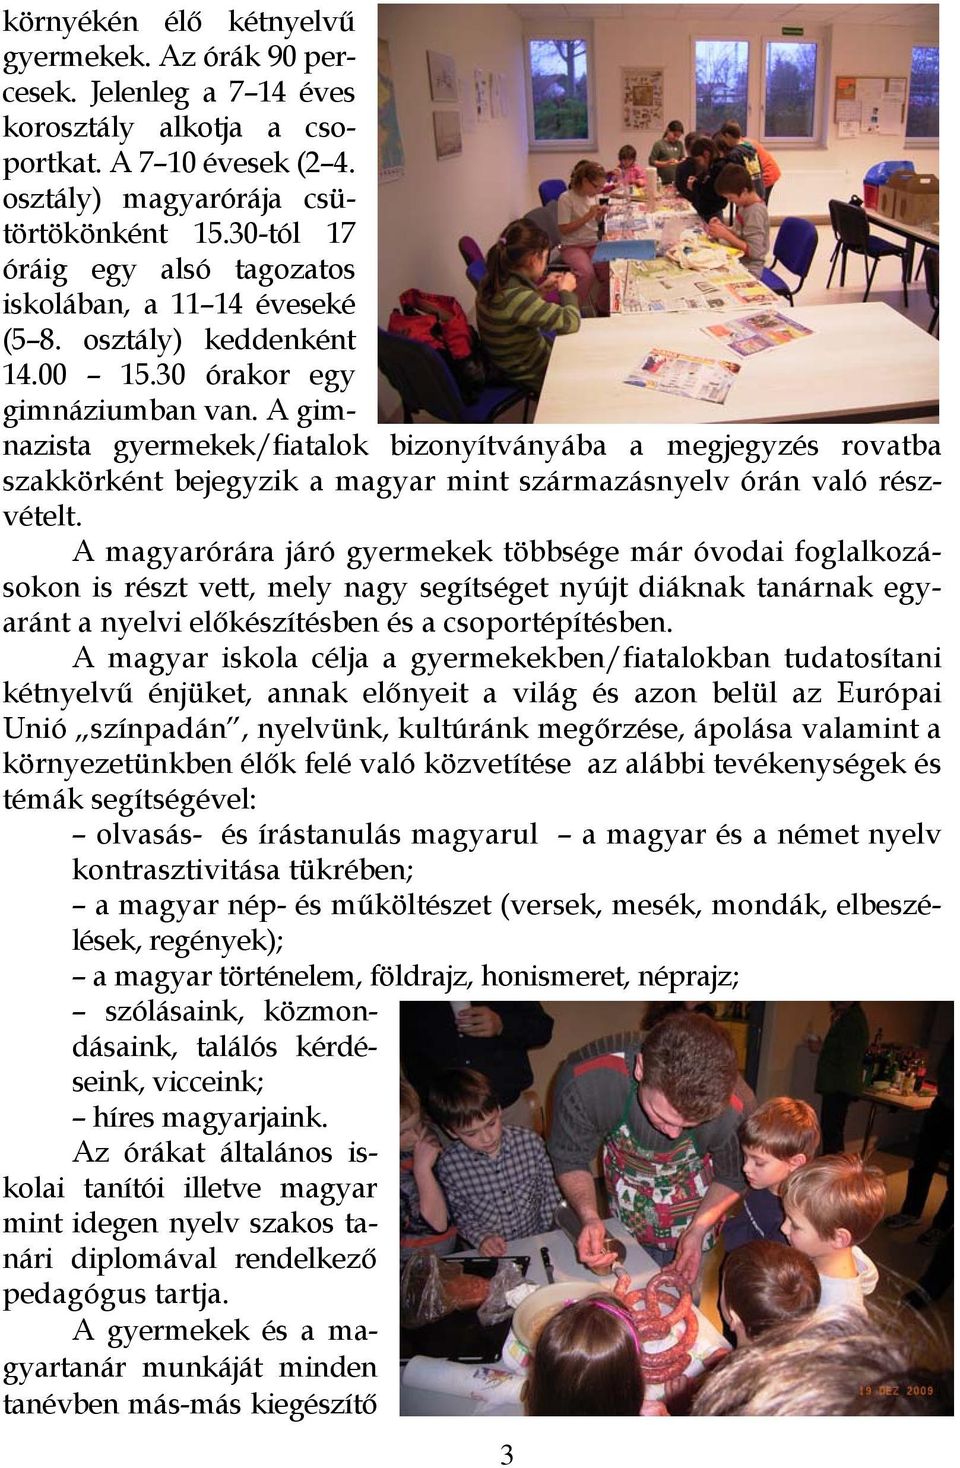 A gimnazista gyermekek/fiatalok bizonyítványába a megjegyzés rovatba szakkörként bejegyzik a magyar mint származásnyelv órán való részvételt.